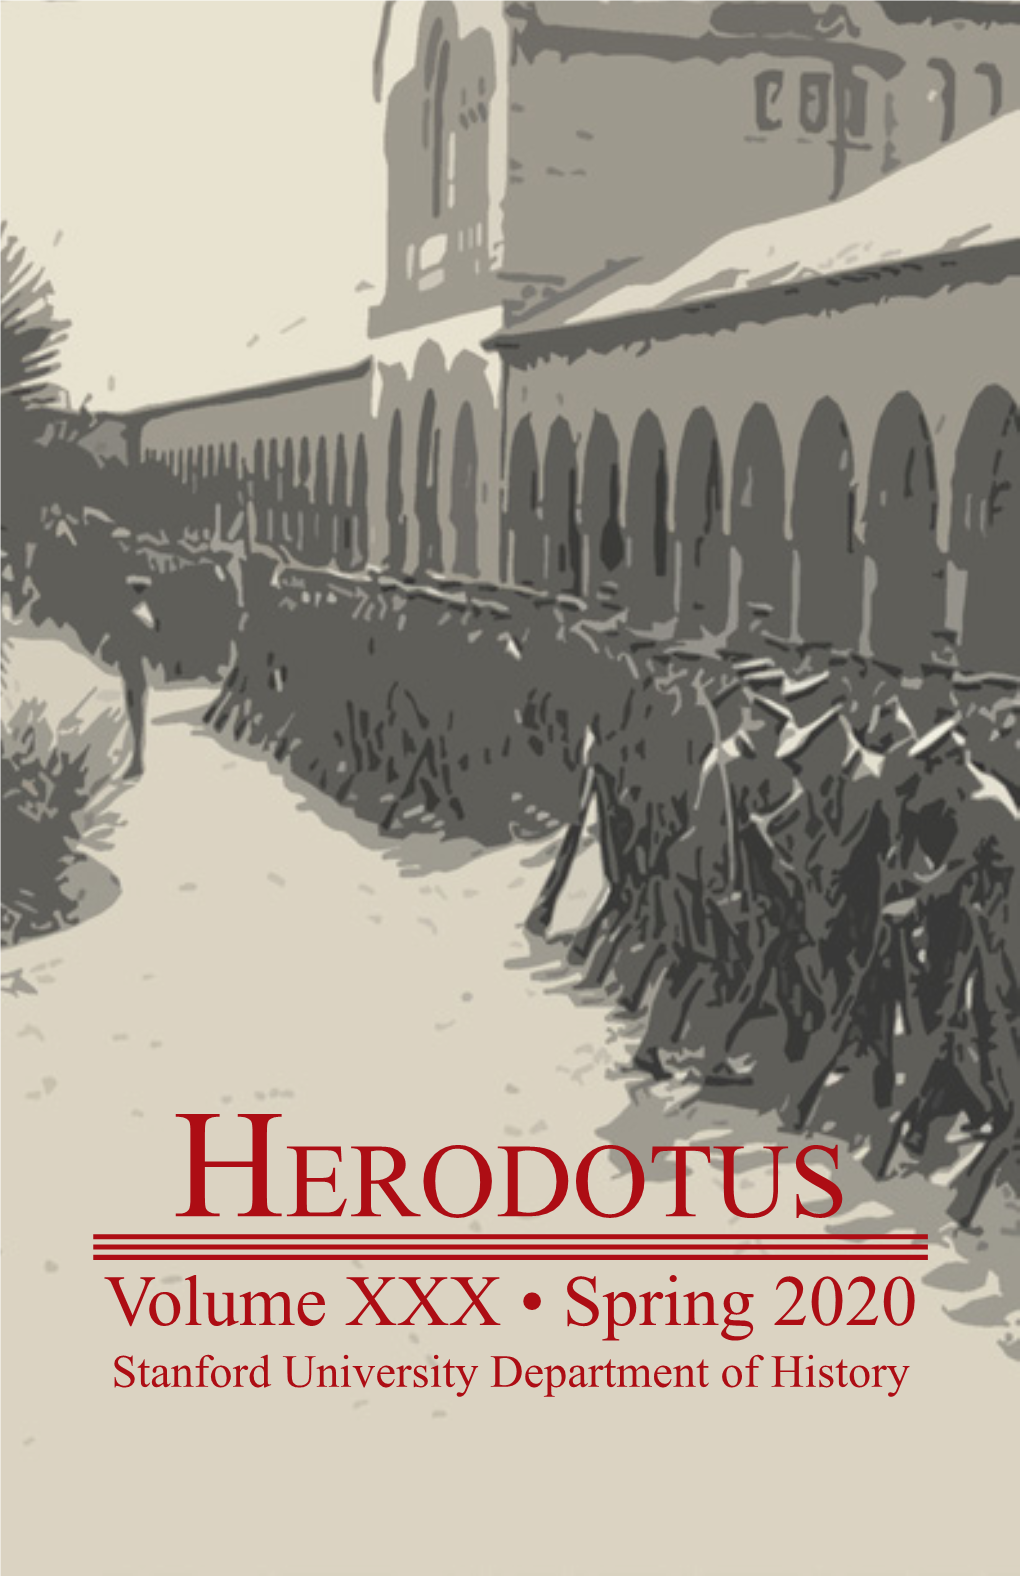 HERODOTUS Volume XXX • Spring 2020 Stanford University Department of History HERODOTUS Volume XXX